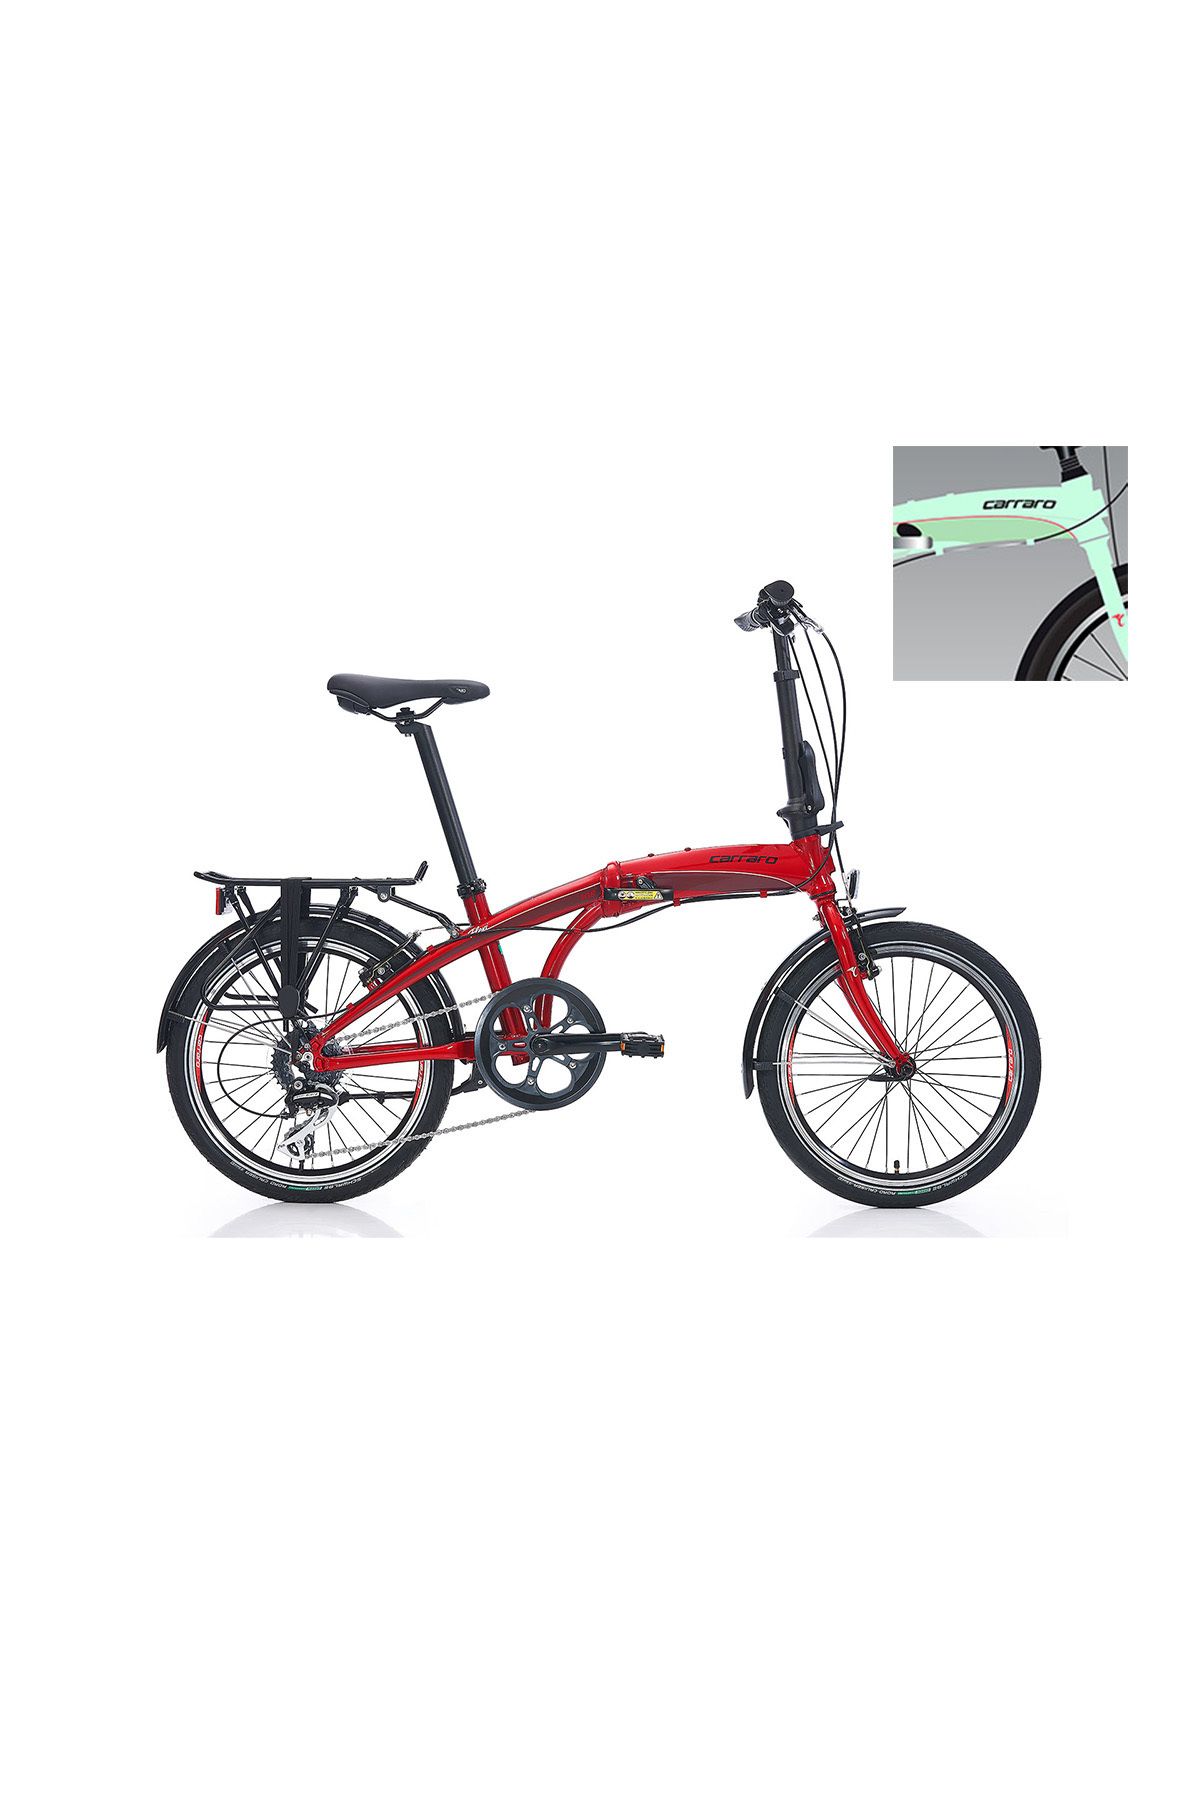 Carraro Flexi 108 20 jant Katlanabilir Bisiklet (Açık Yeşil Siyah Kırmızı)